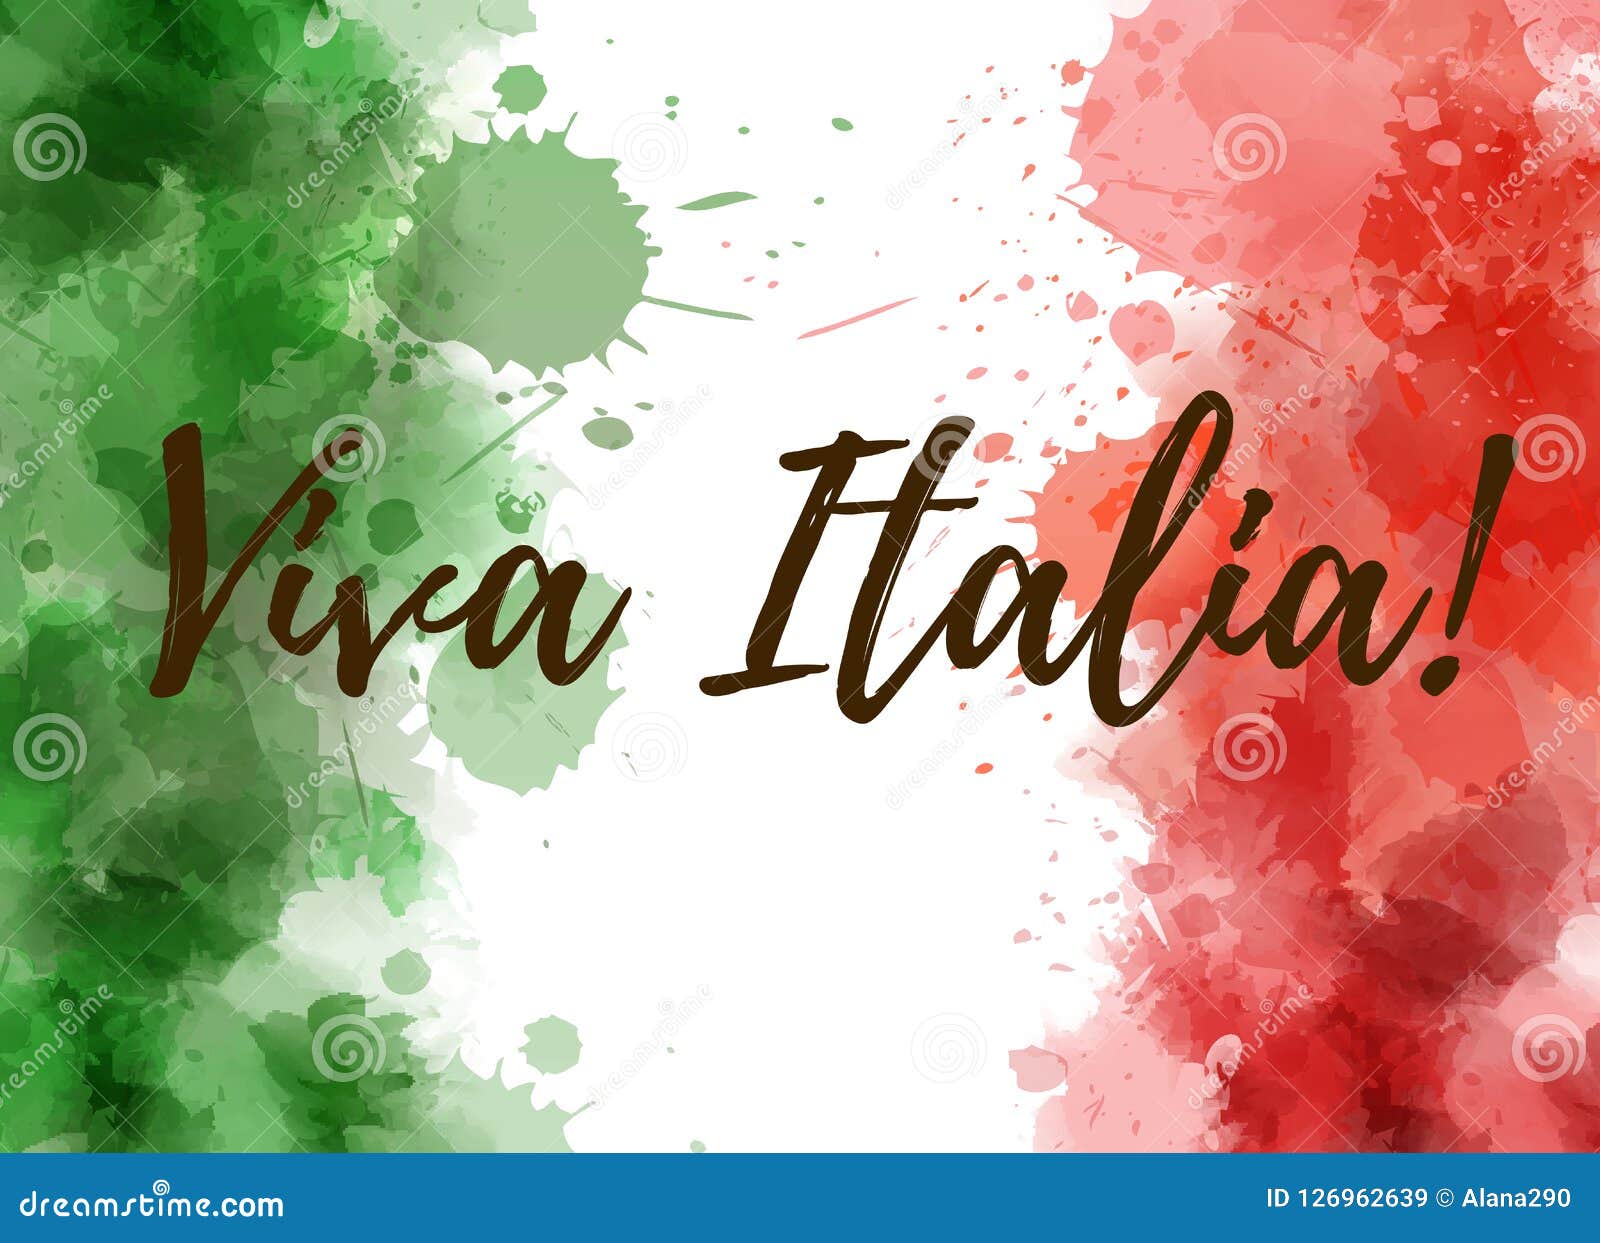 viva italia background